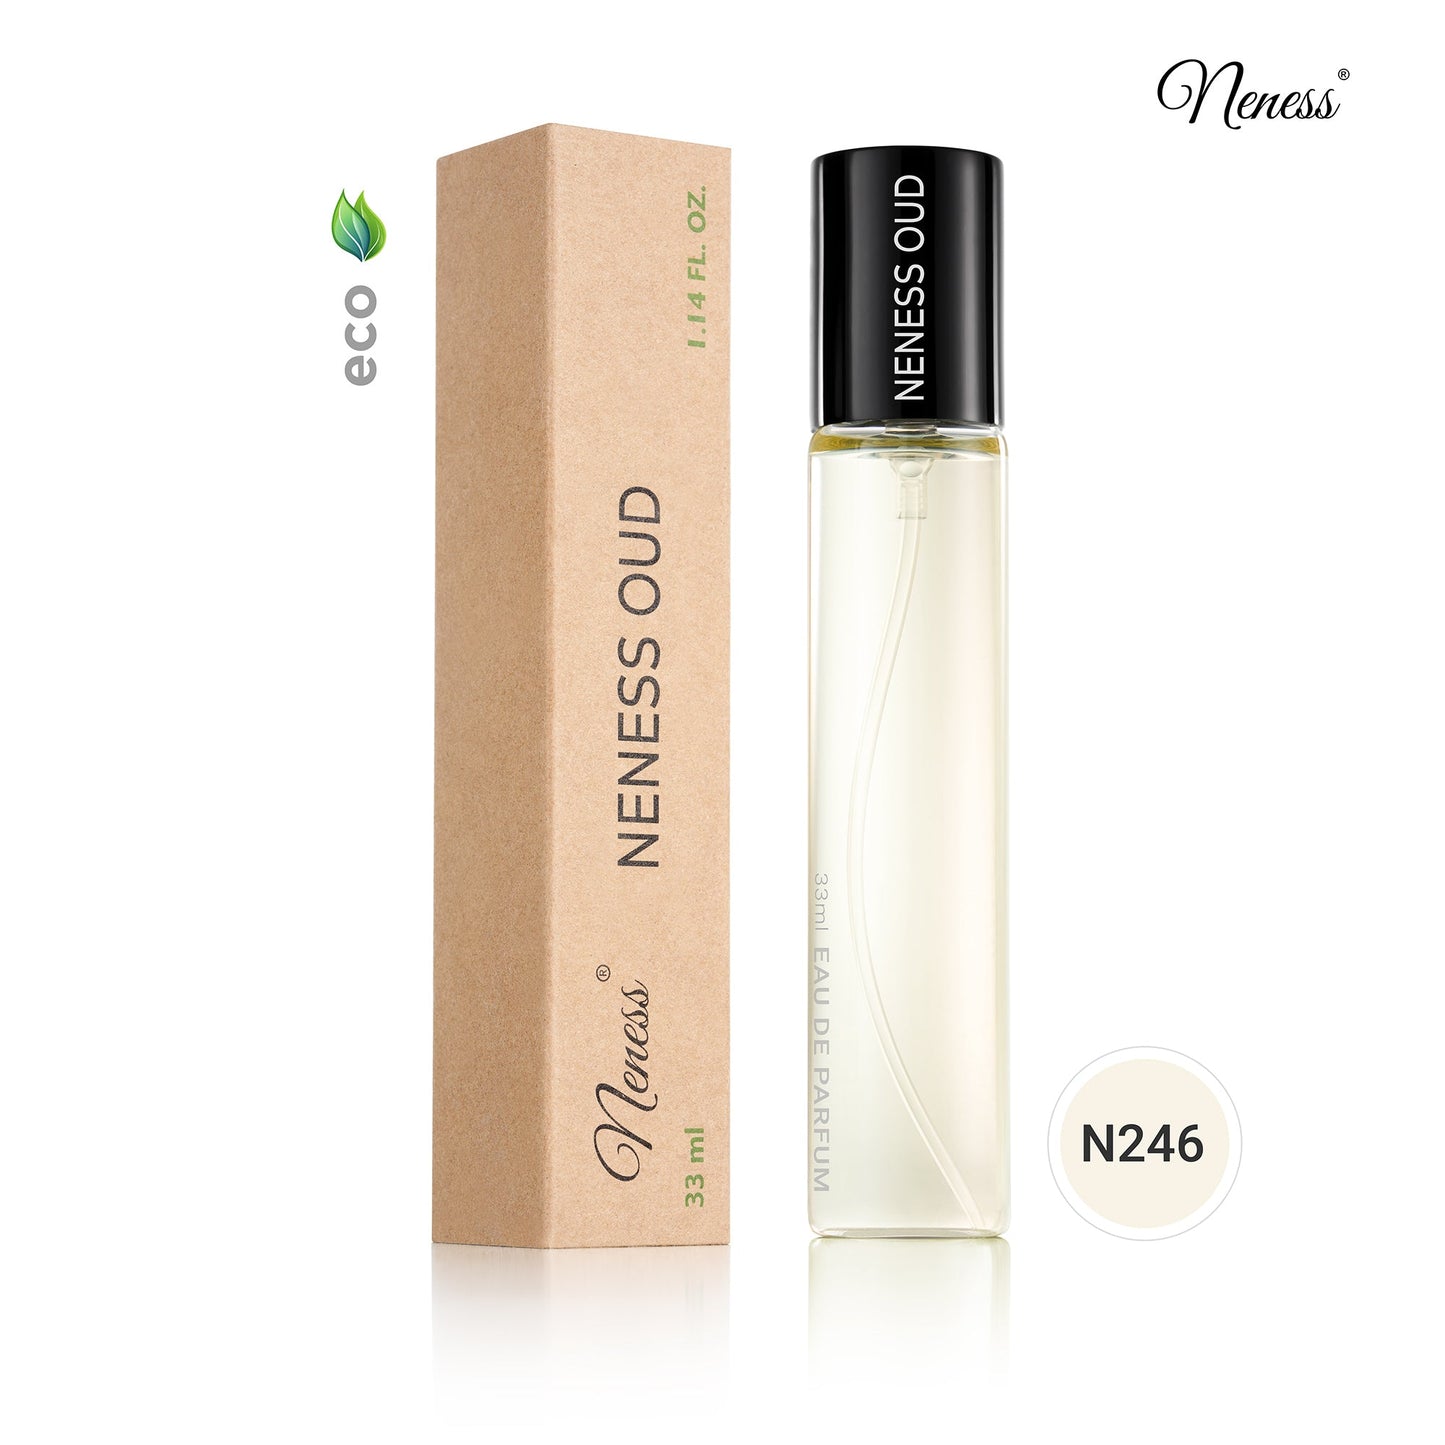 N246. Neness OUD - 33 ml - Parfums unisexes